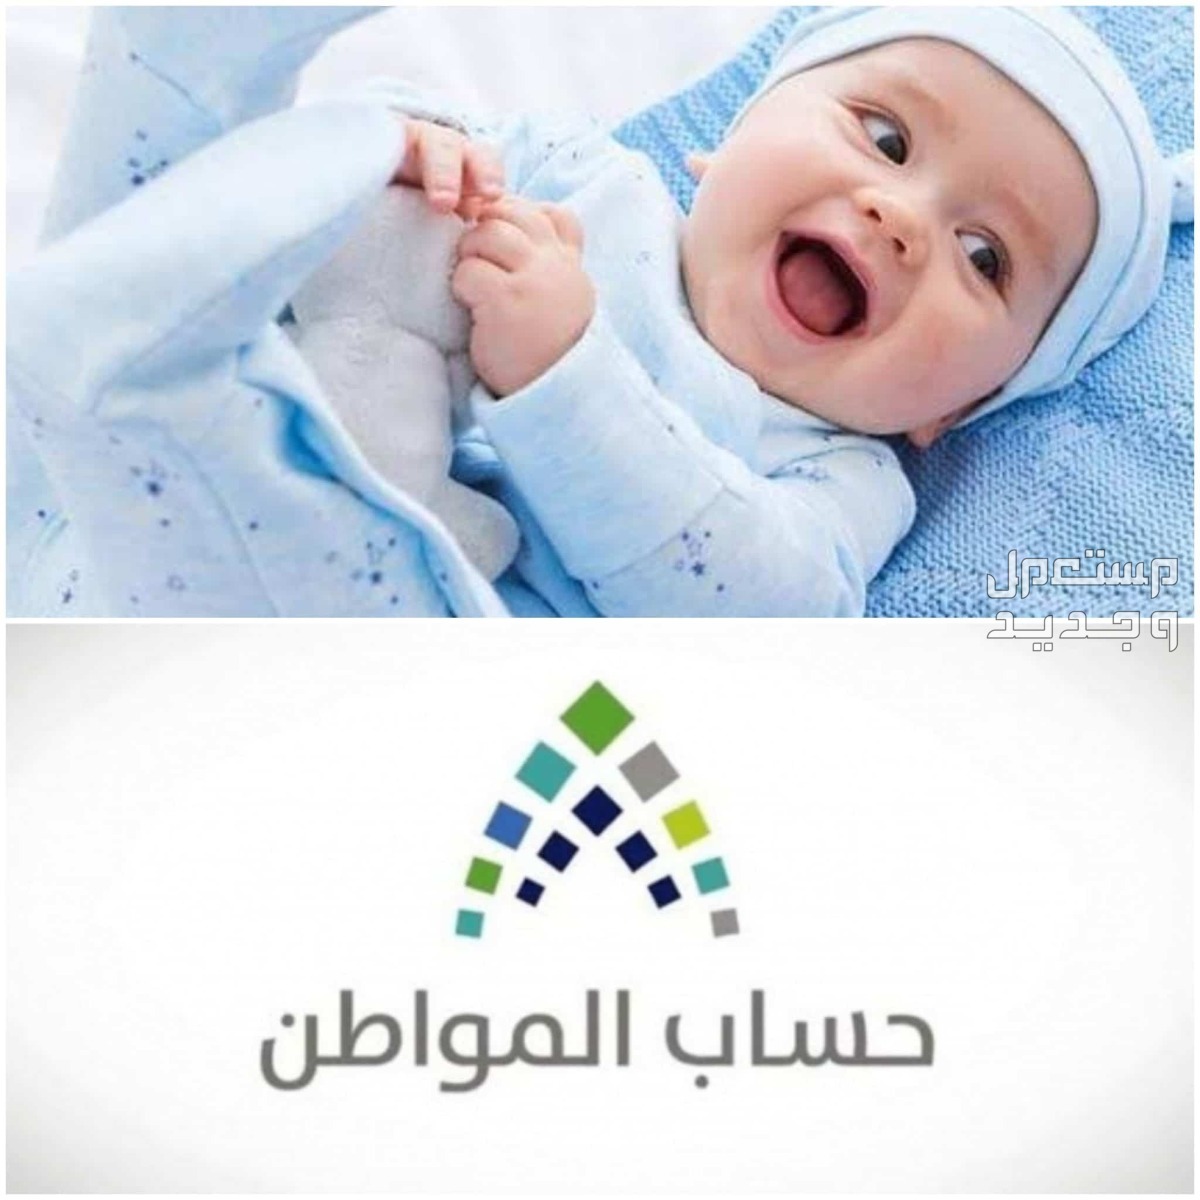 طريقة تسجيل المولود الجديد في حساب المواطن 1445 في الأردن تسجيل المولود الجديد في حساب المواطن